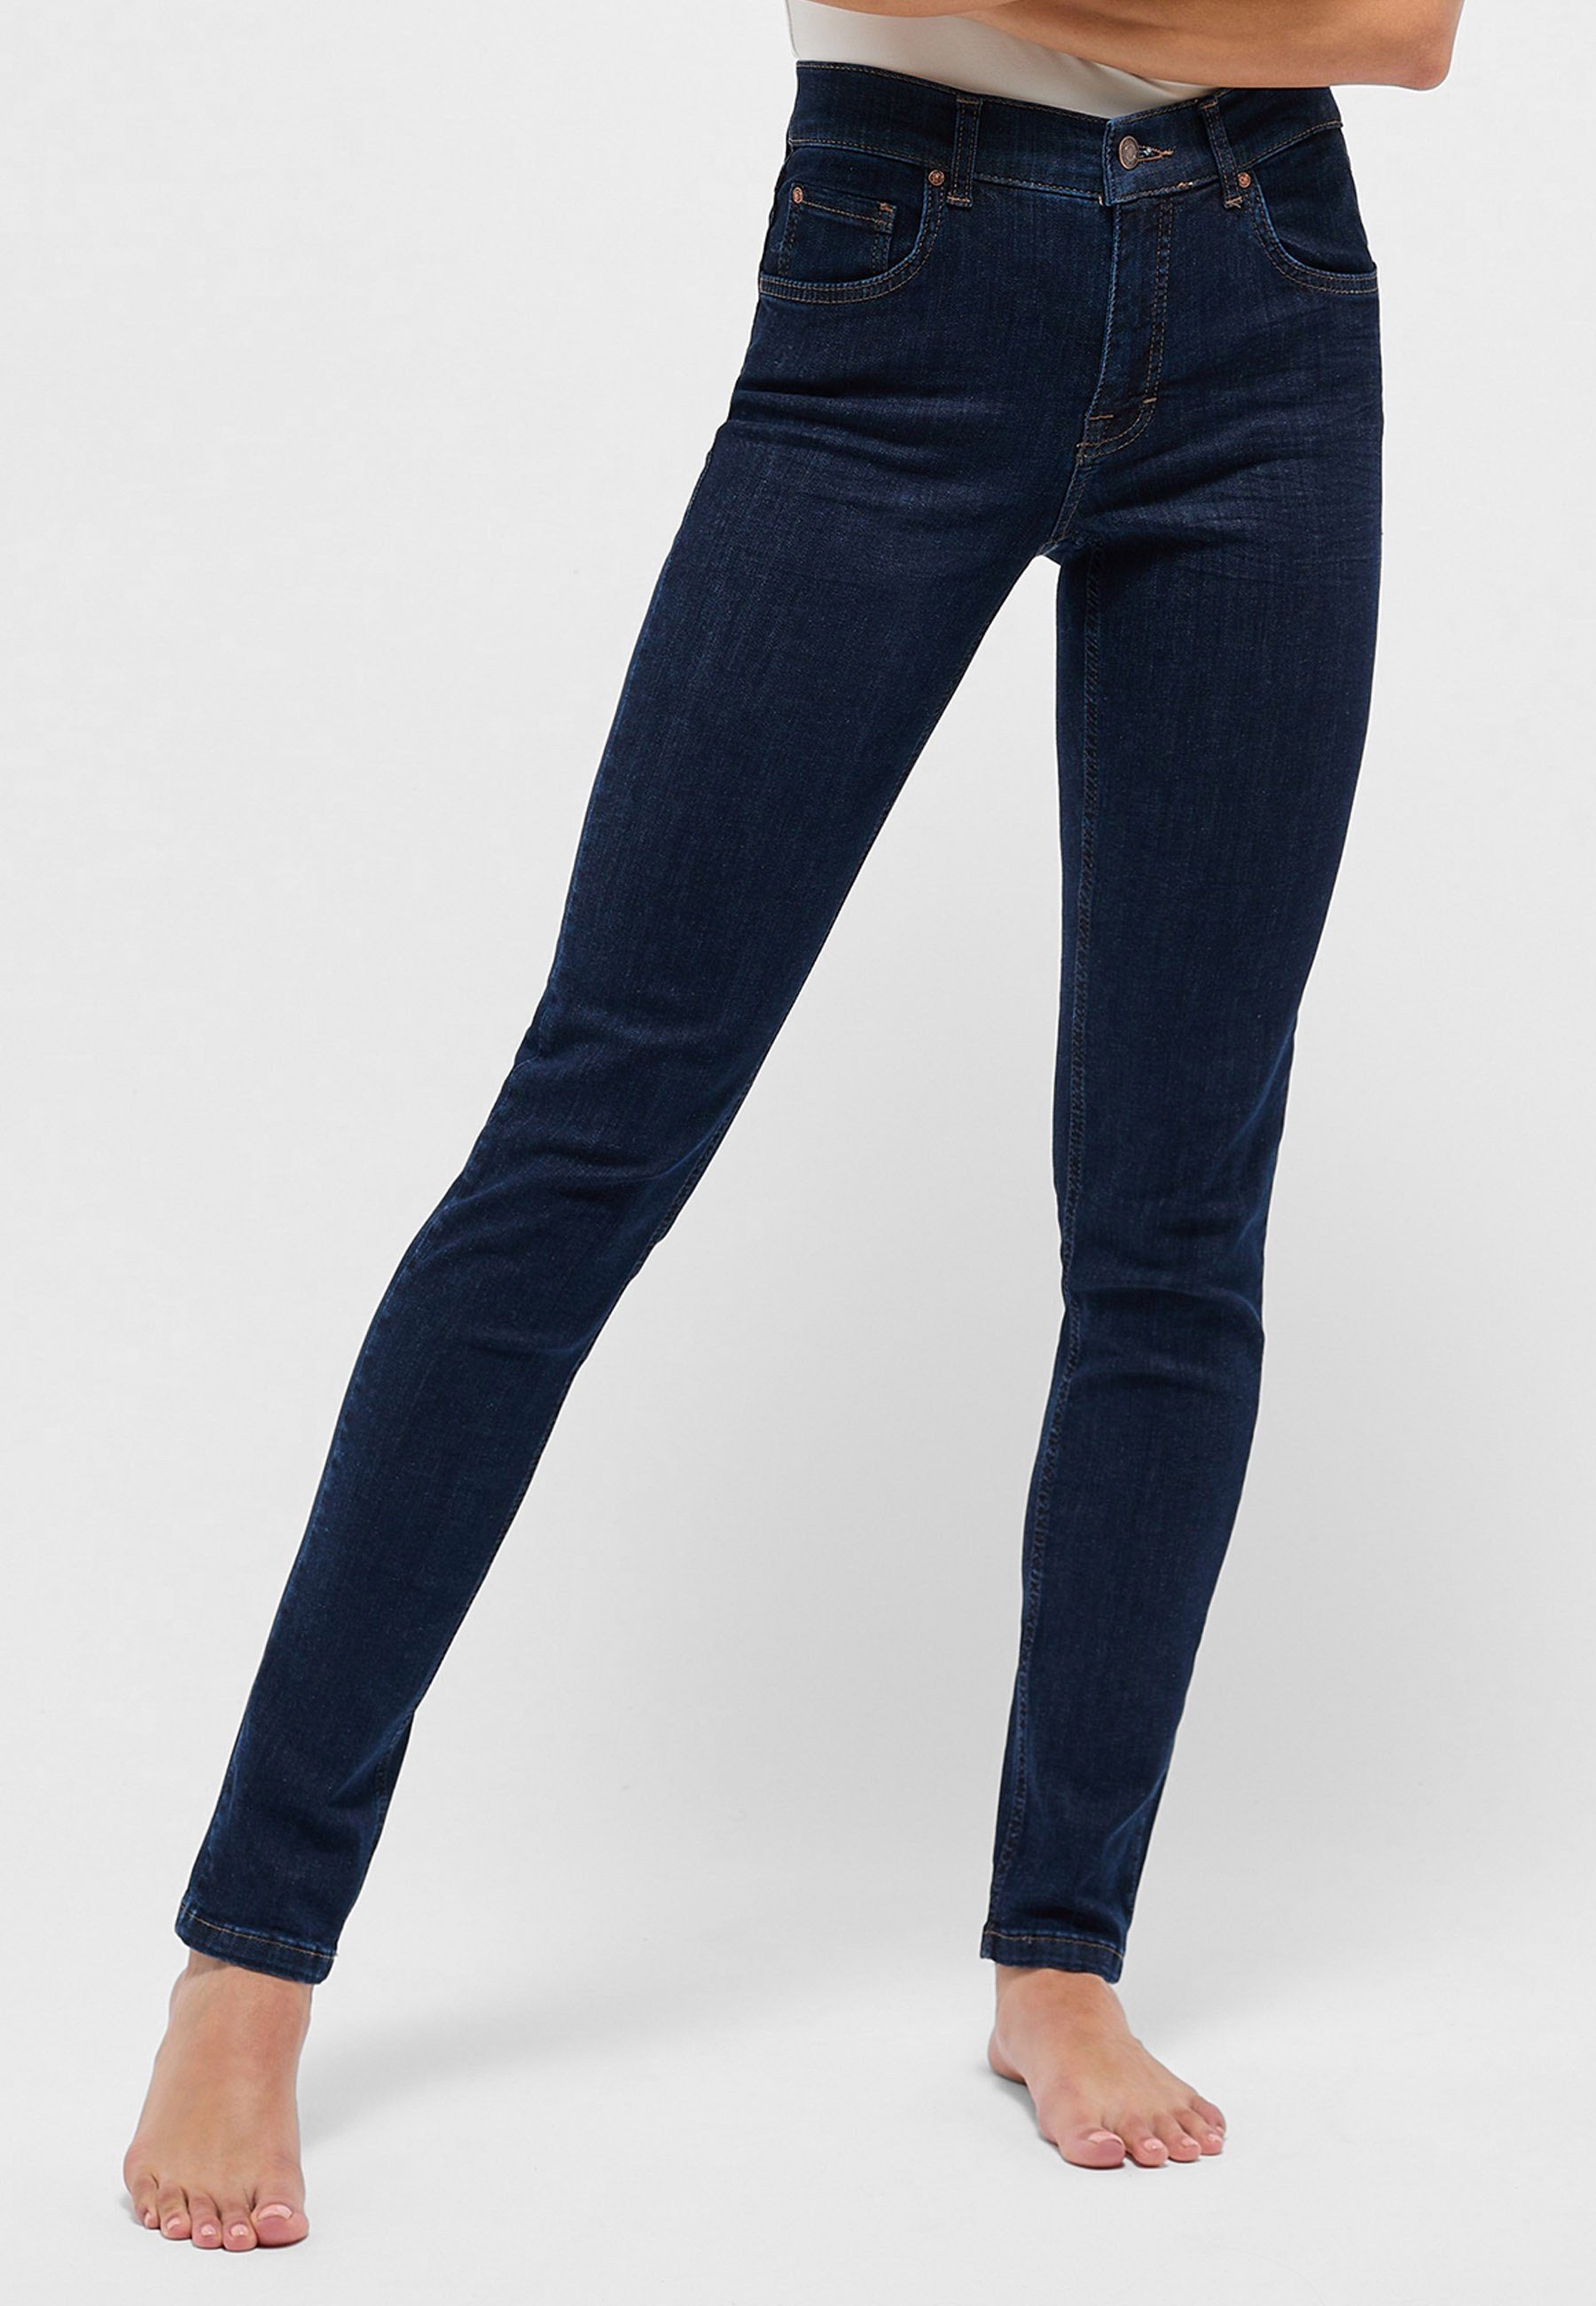 Reinhold Fleckenstein ANGELS Skinny Denim Stretch Jeans mit Label-Applikationen Power mit Slim-fit-Jeans